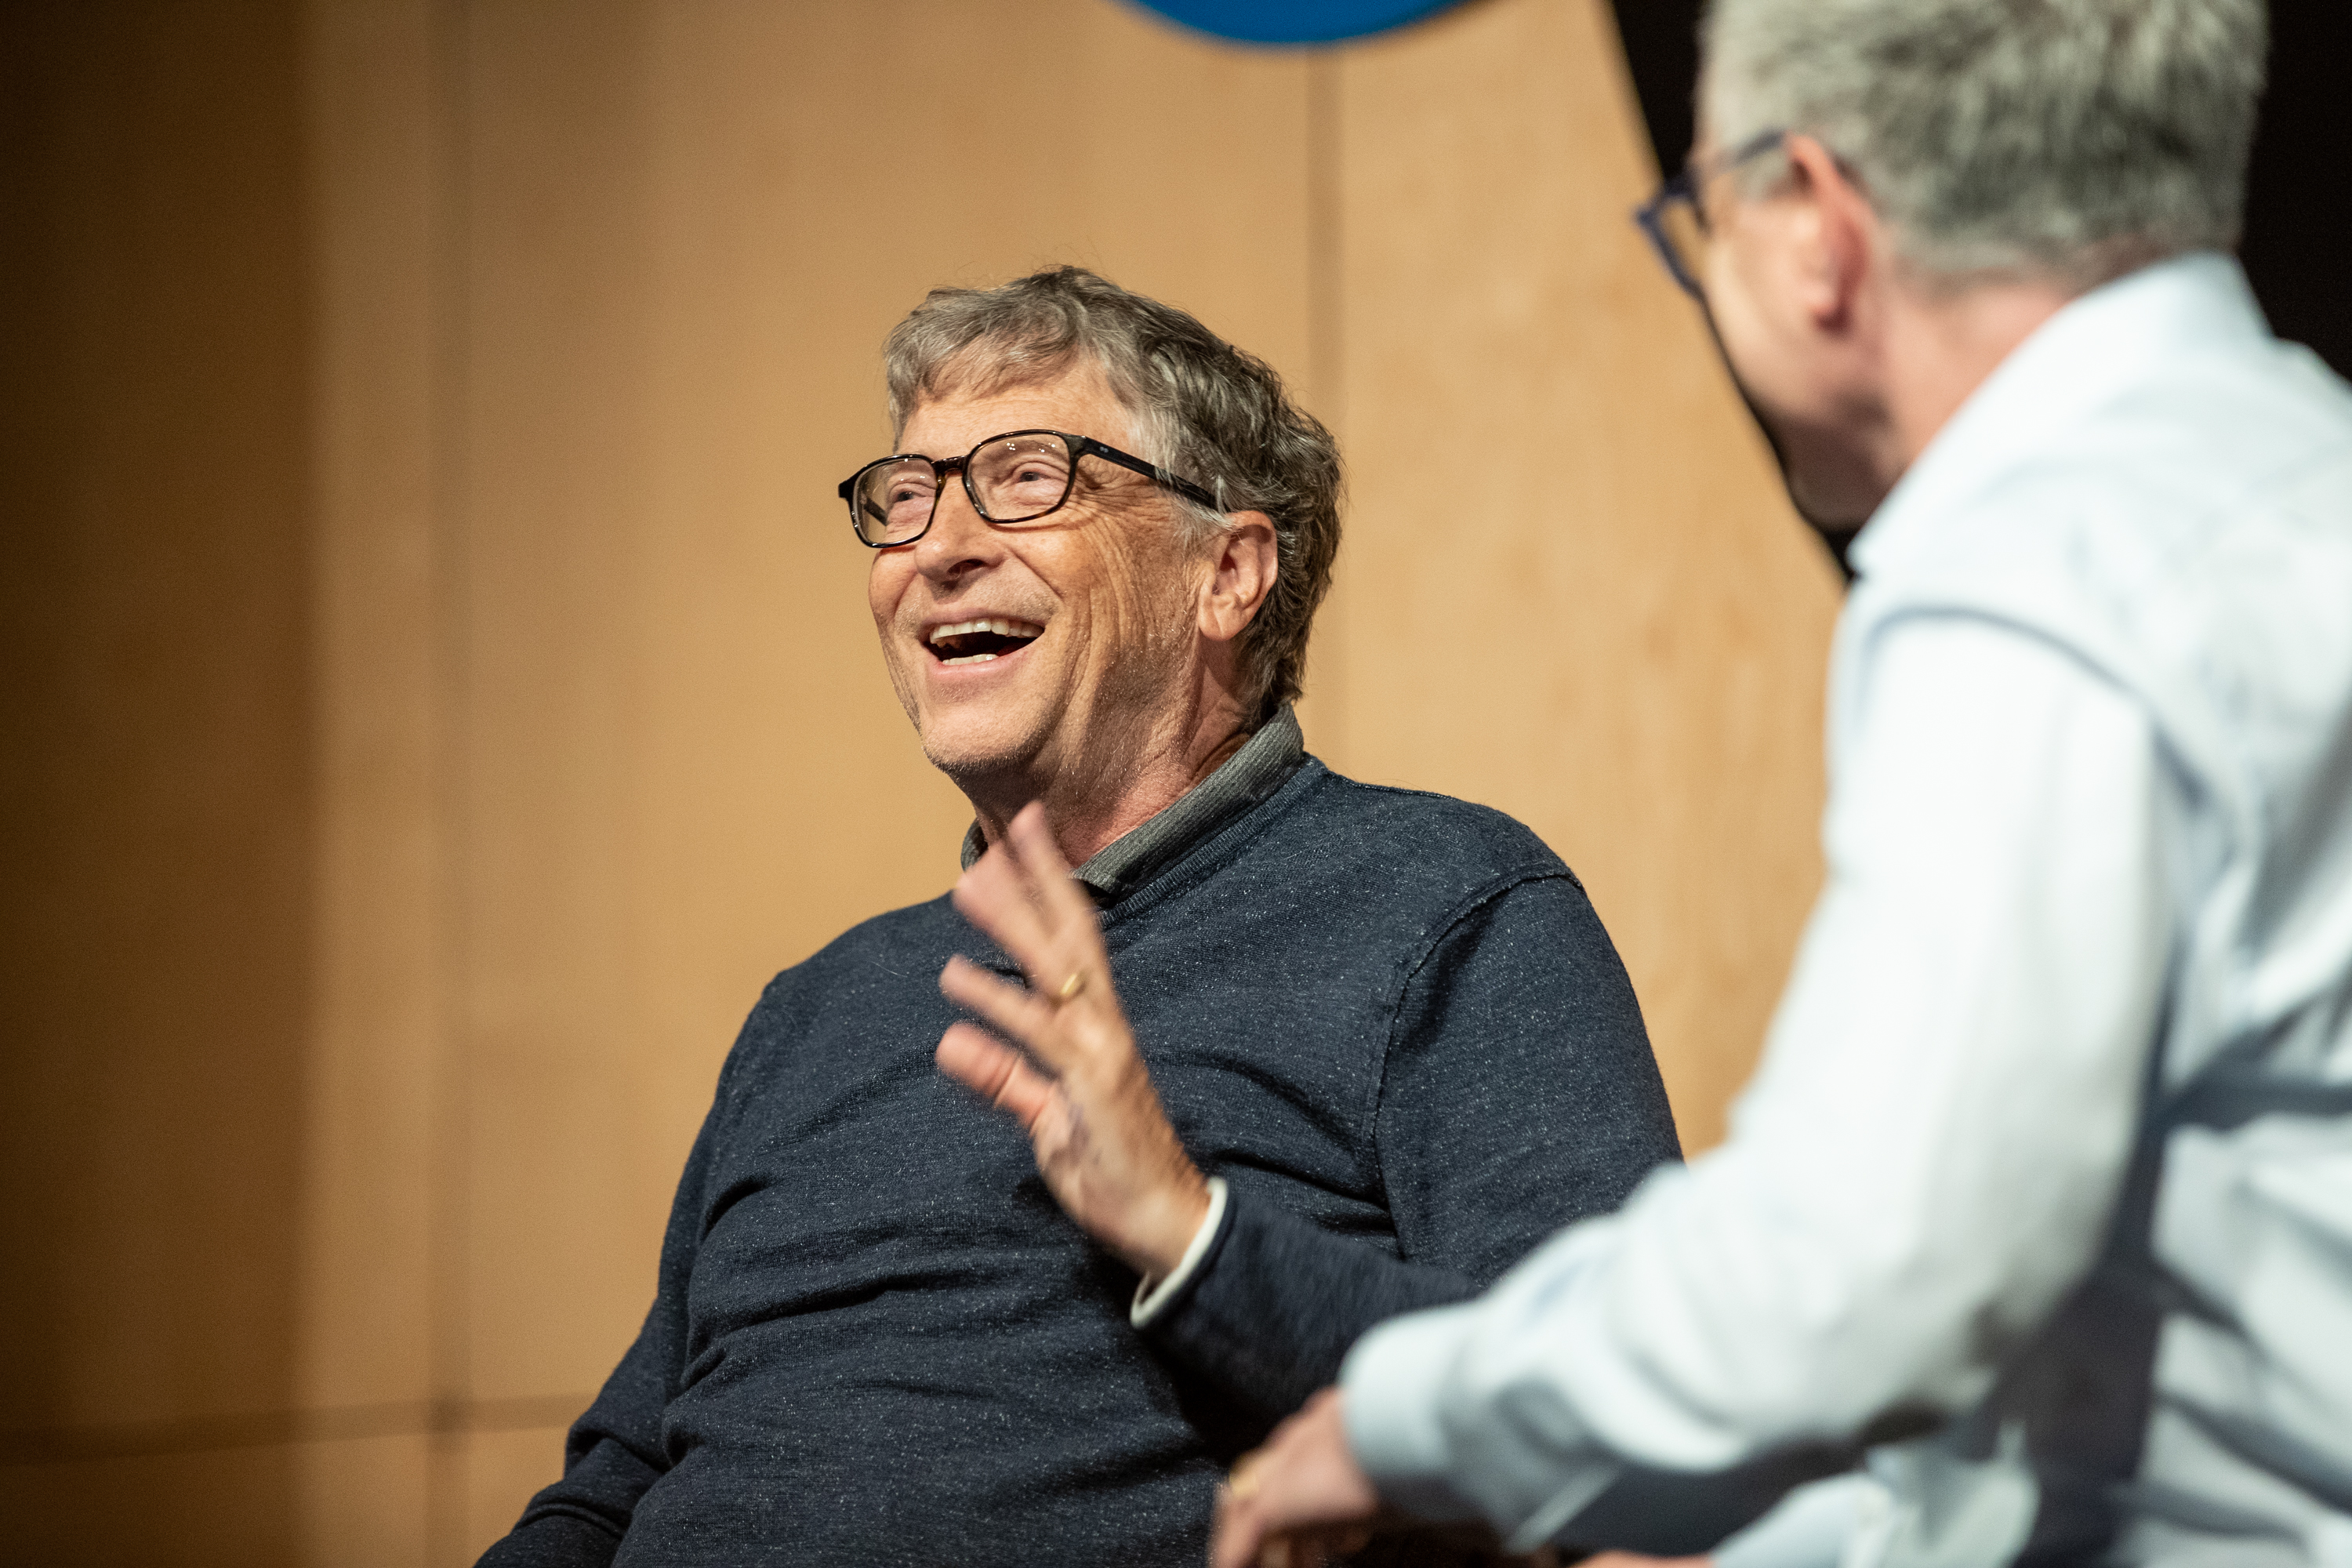 Faculty Summit 2019 - Bill Gates